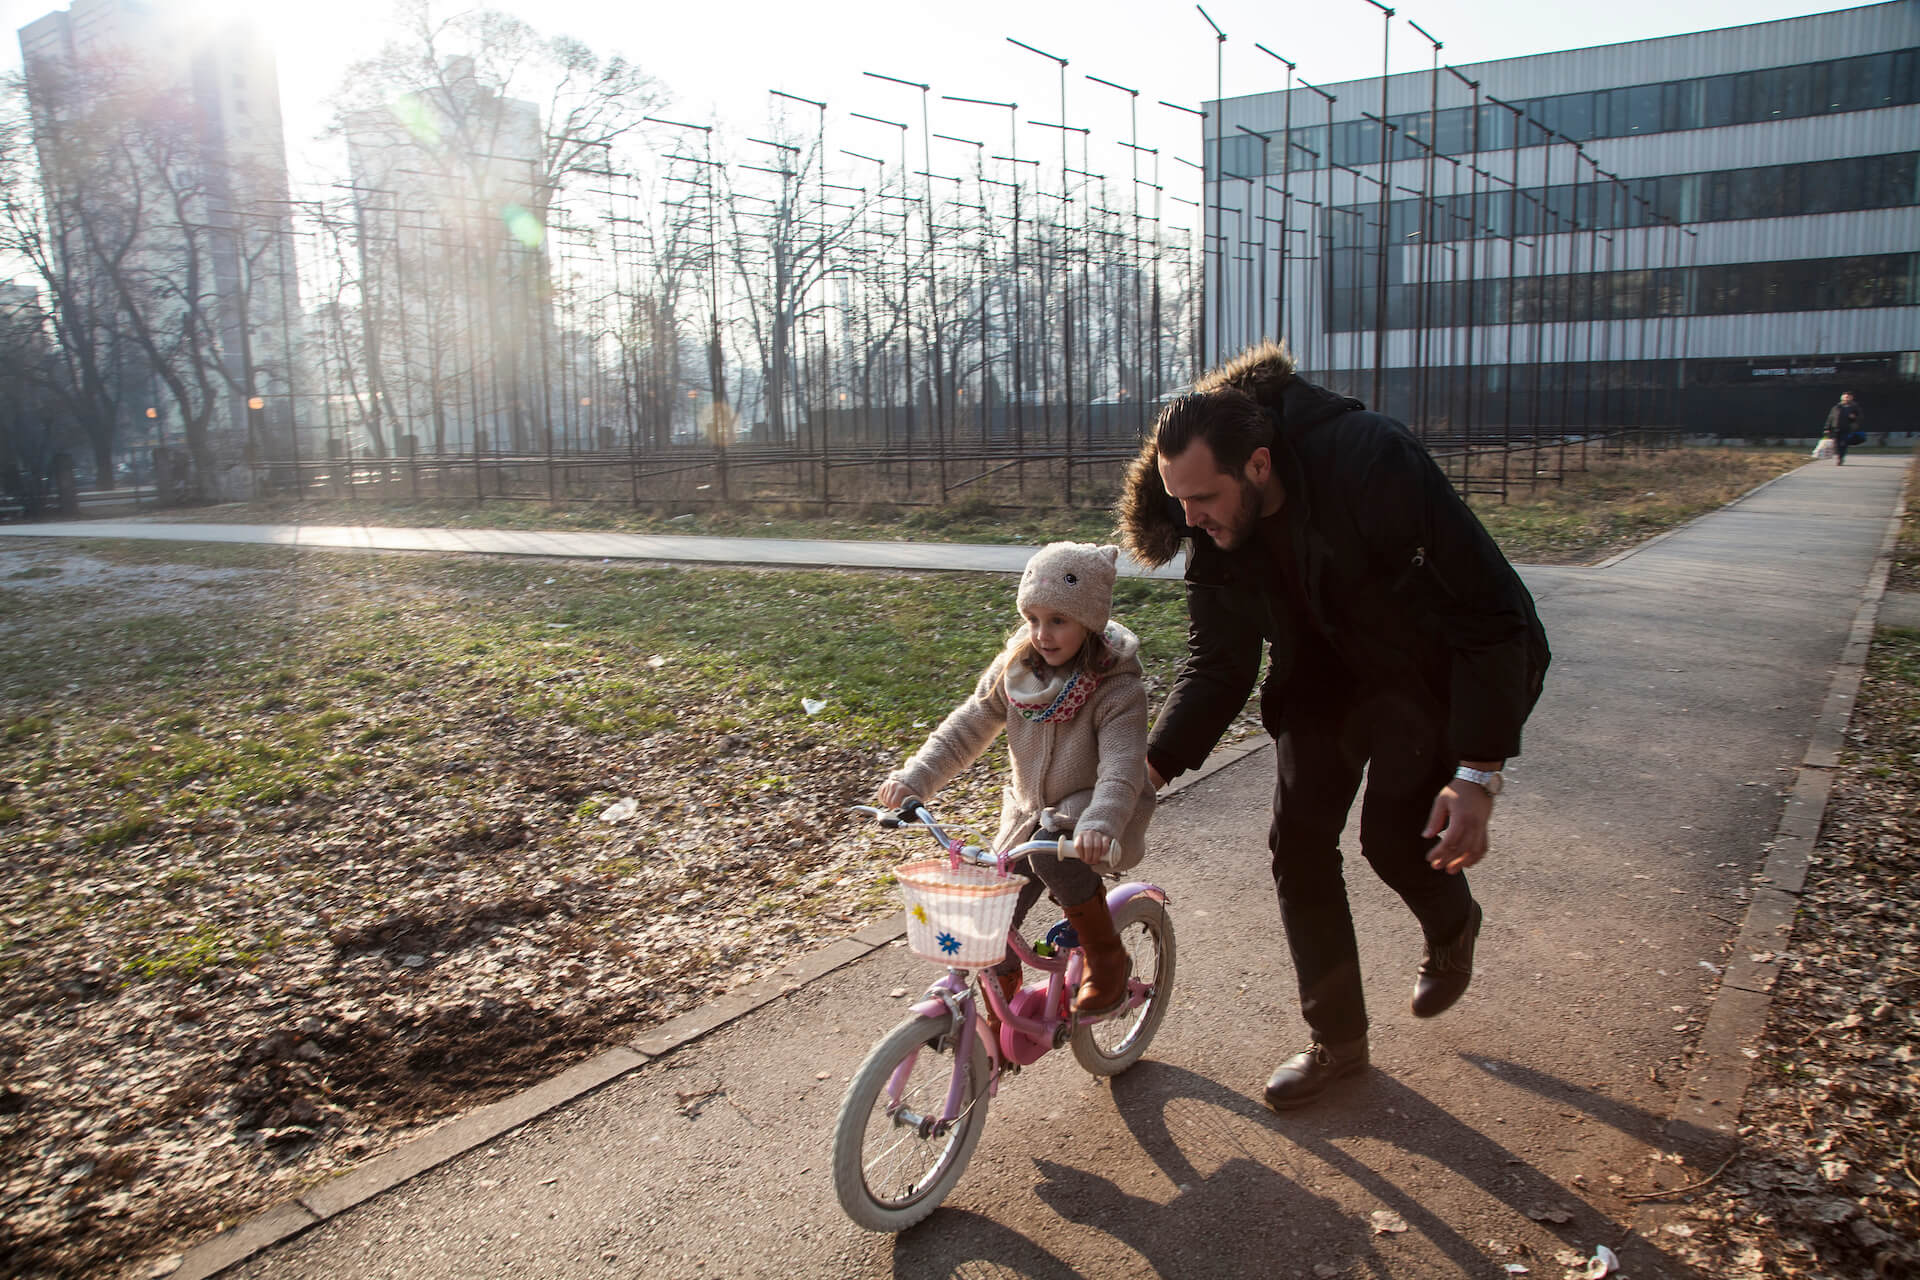 Nihad Hasanović le enseña a su hija Enea, de 5 años, a andar en bicicleta. Nihad es un padre que se queda en casa, cuya esposa trabaja en horario de oficina durante el día.